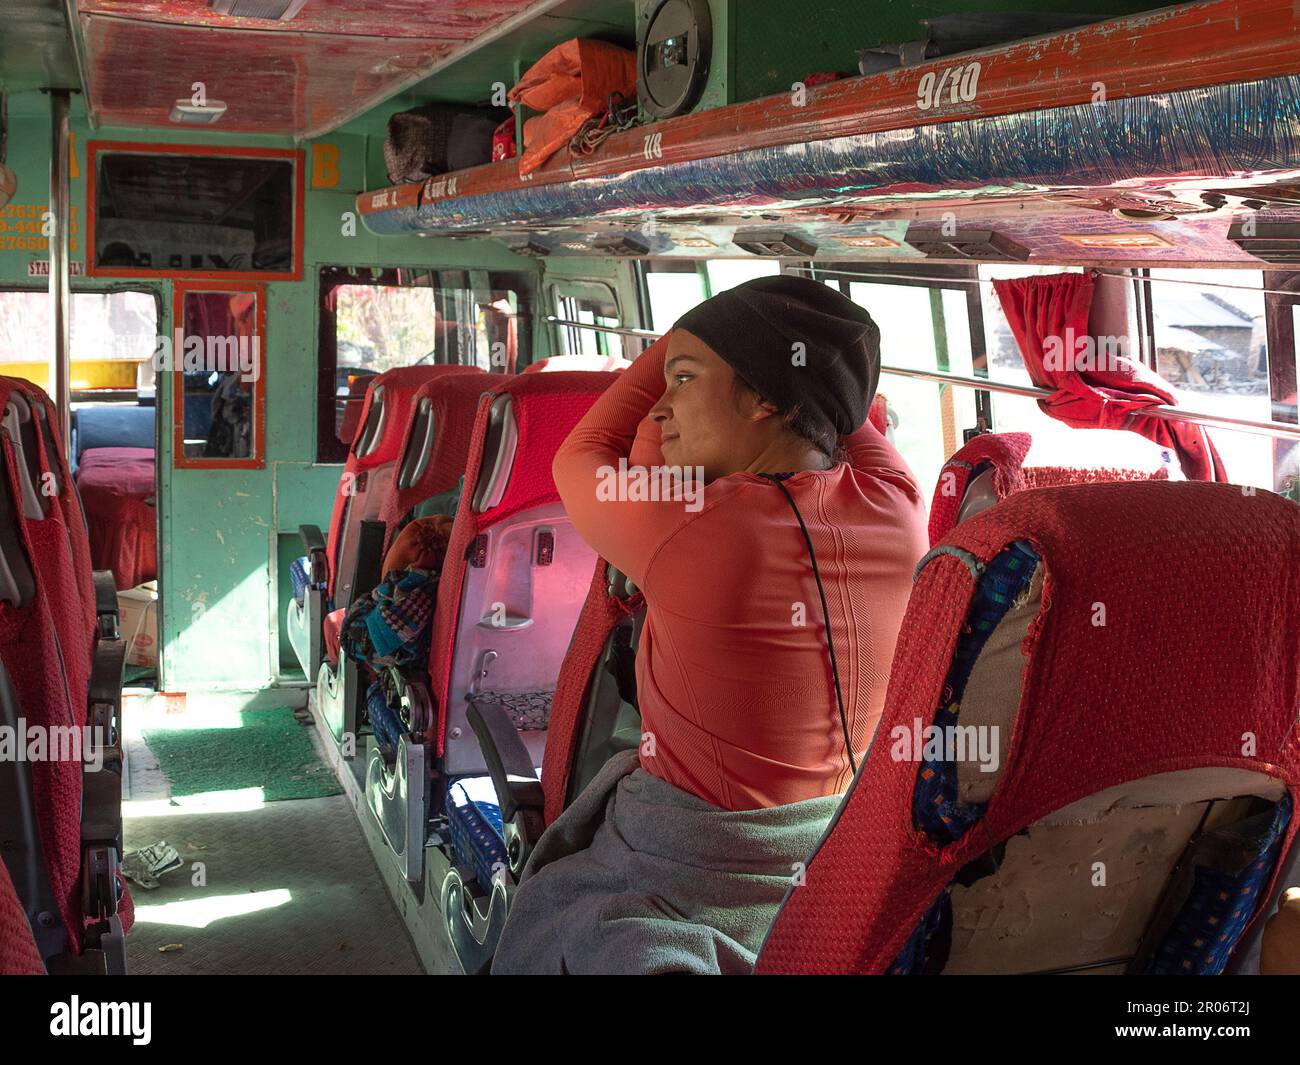 Mochilero femenino sentado dentro de un autobús esperando el autobús para iniciar el viaje. Foto de stock